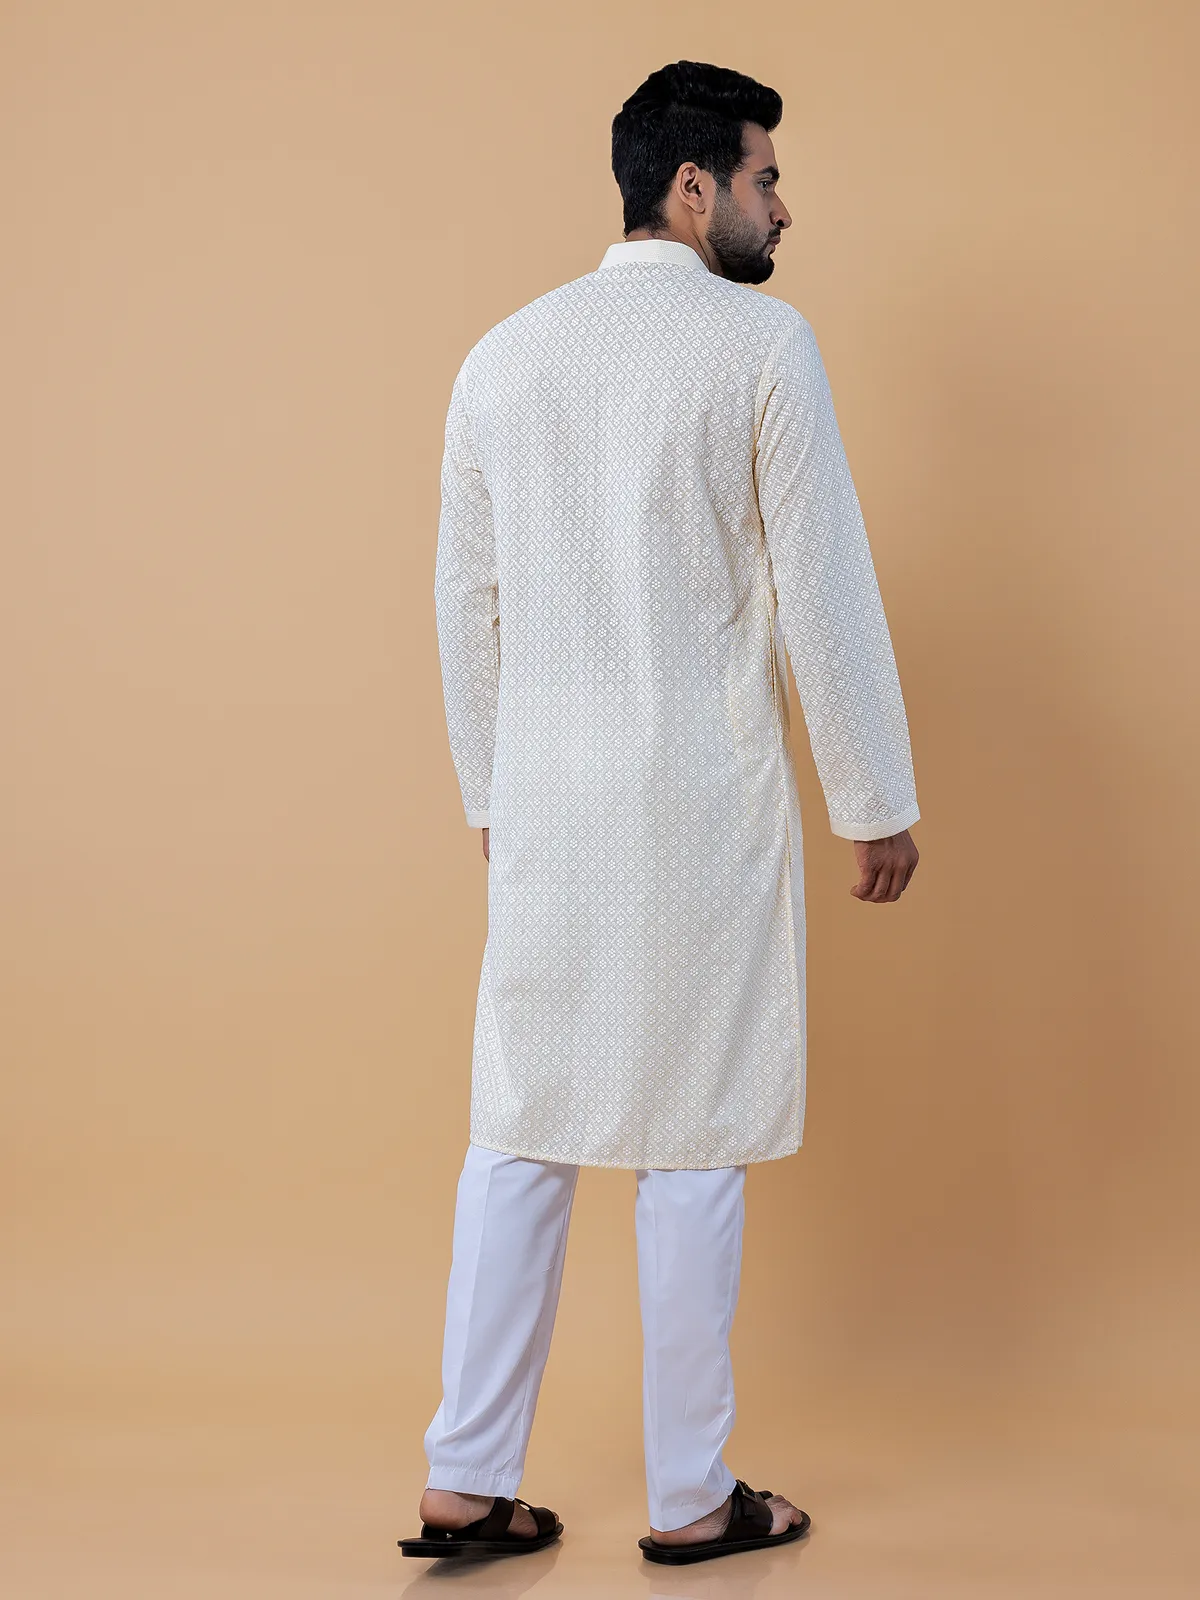 Cotton lucknowi kurta suit in light yellow